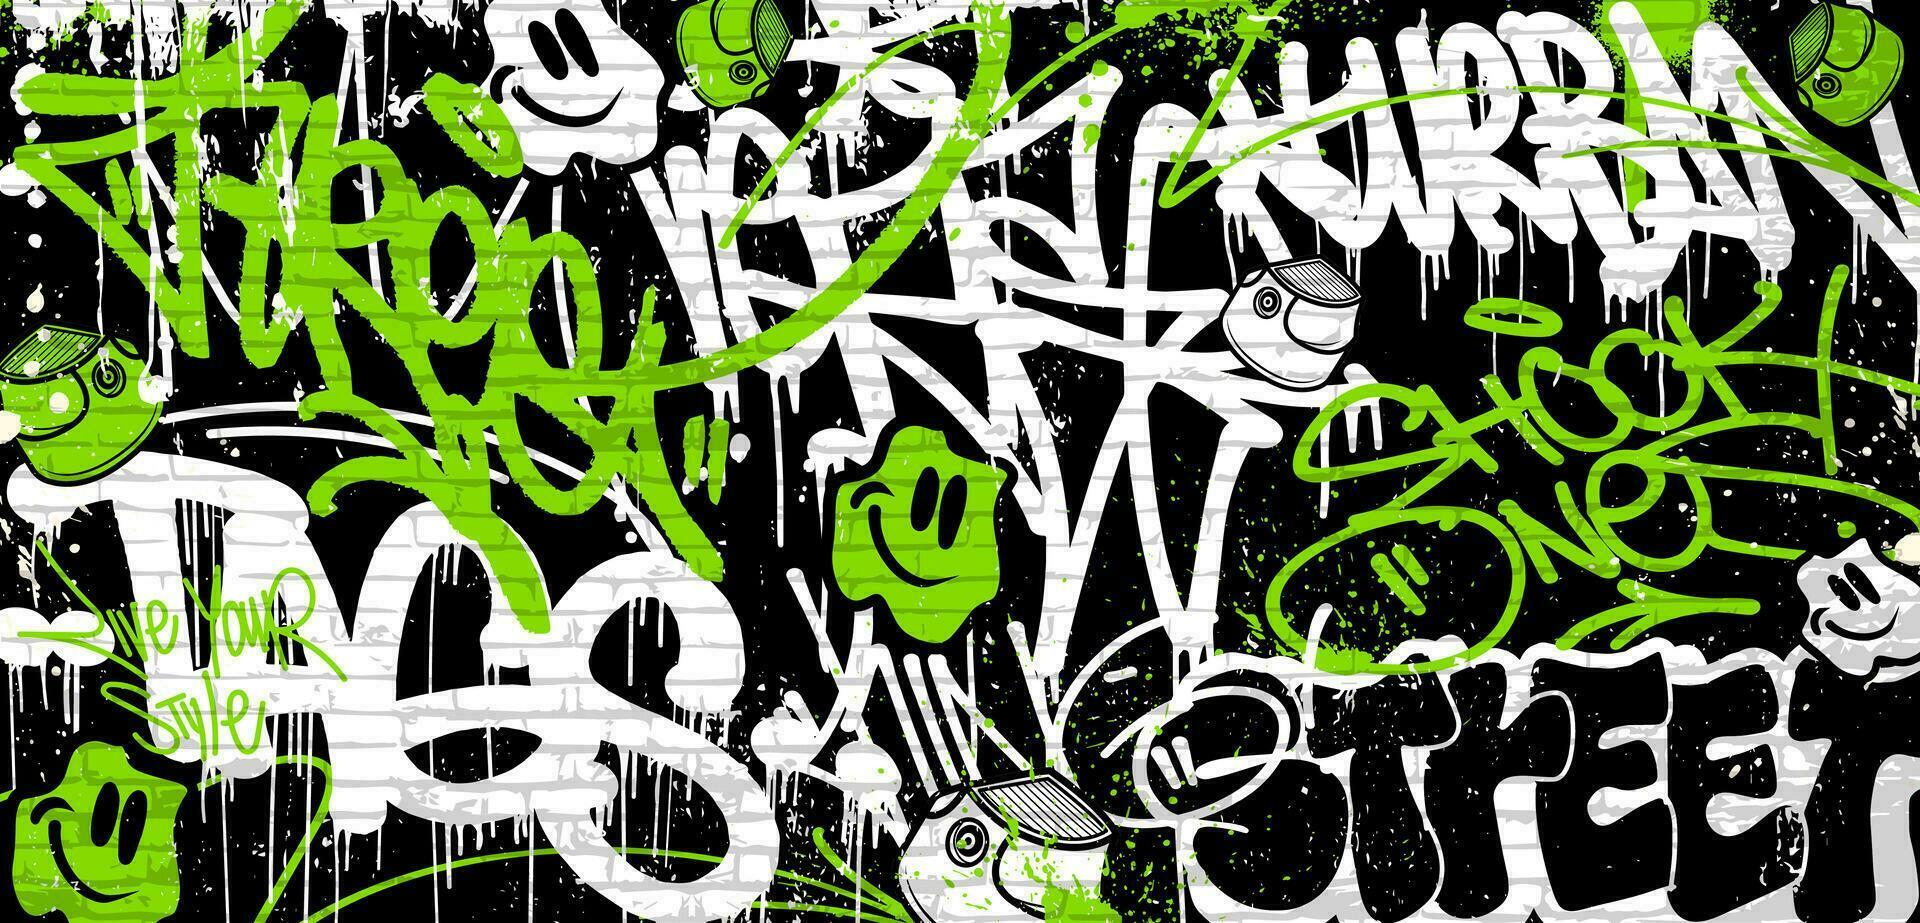 grafite fundo com jogar fora, rabisco e marcação dentro vibrante cores. abstrato grafite dentro vetor ilustrações.